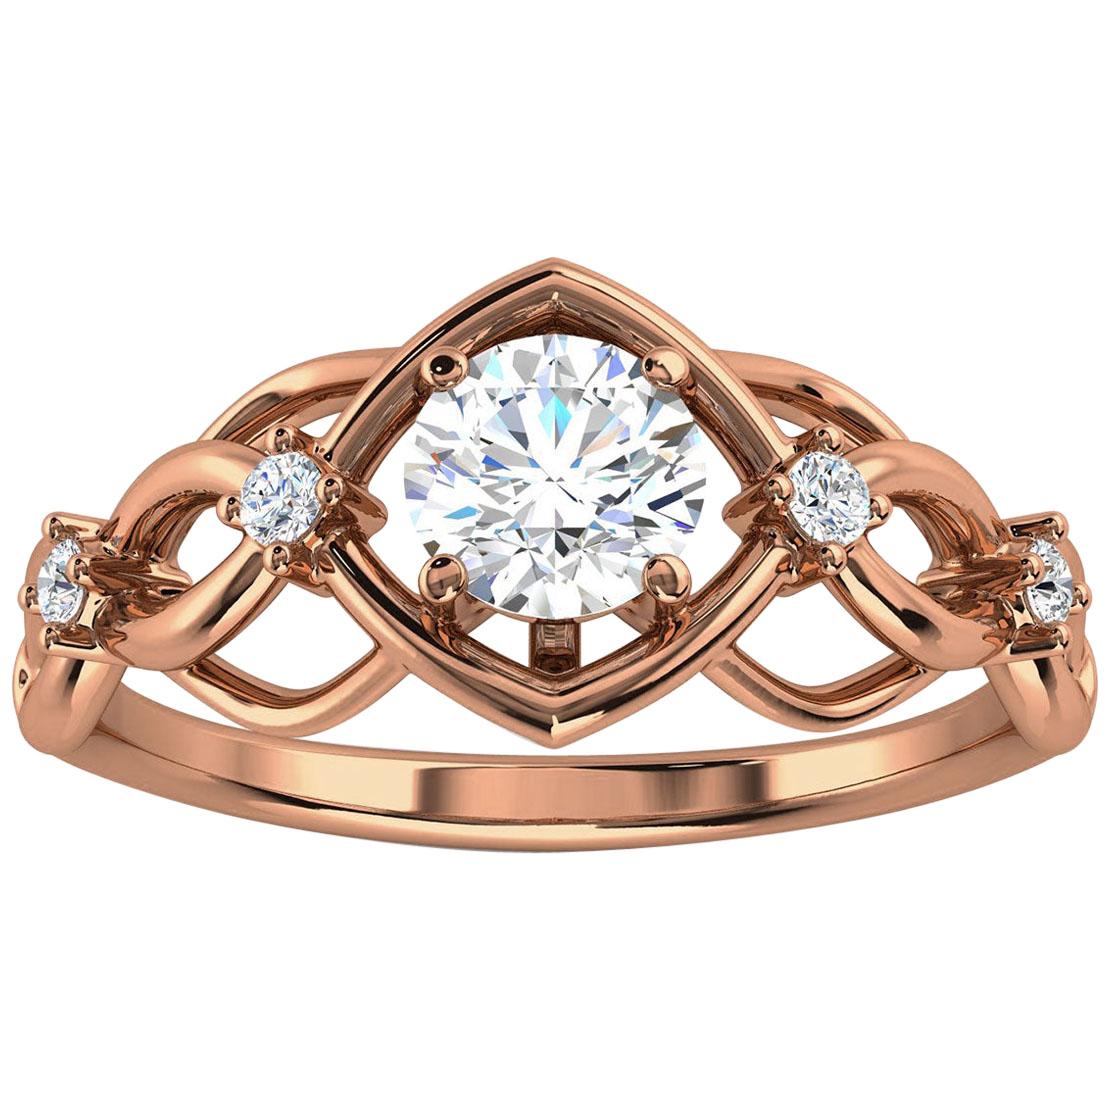 14k Rose Gold Delicate Orim Diamond Ring '2/5 Ct. Tw'